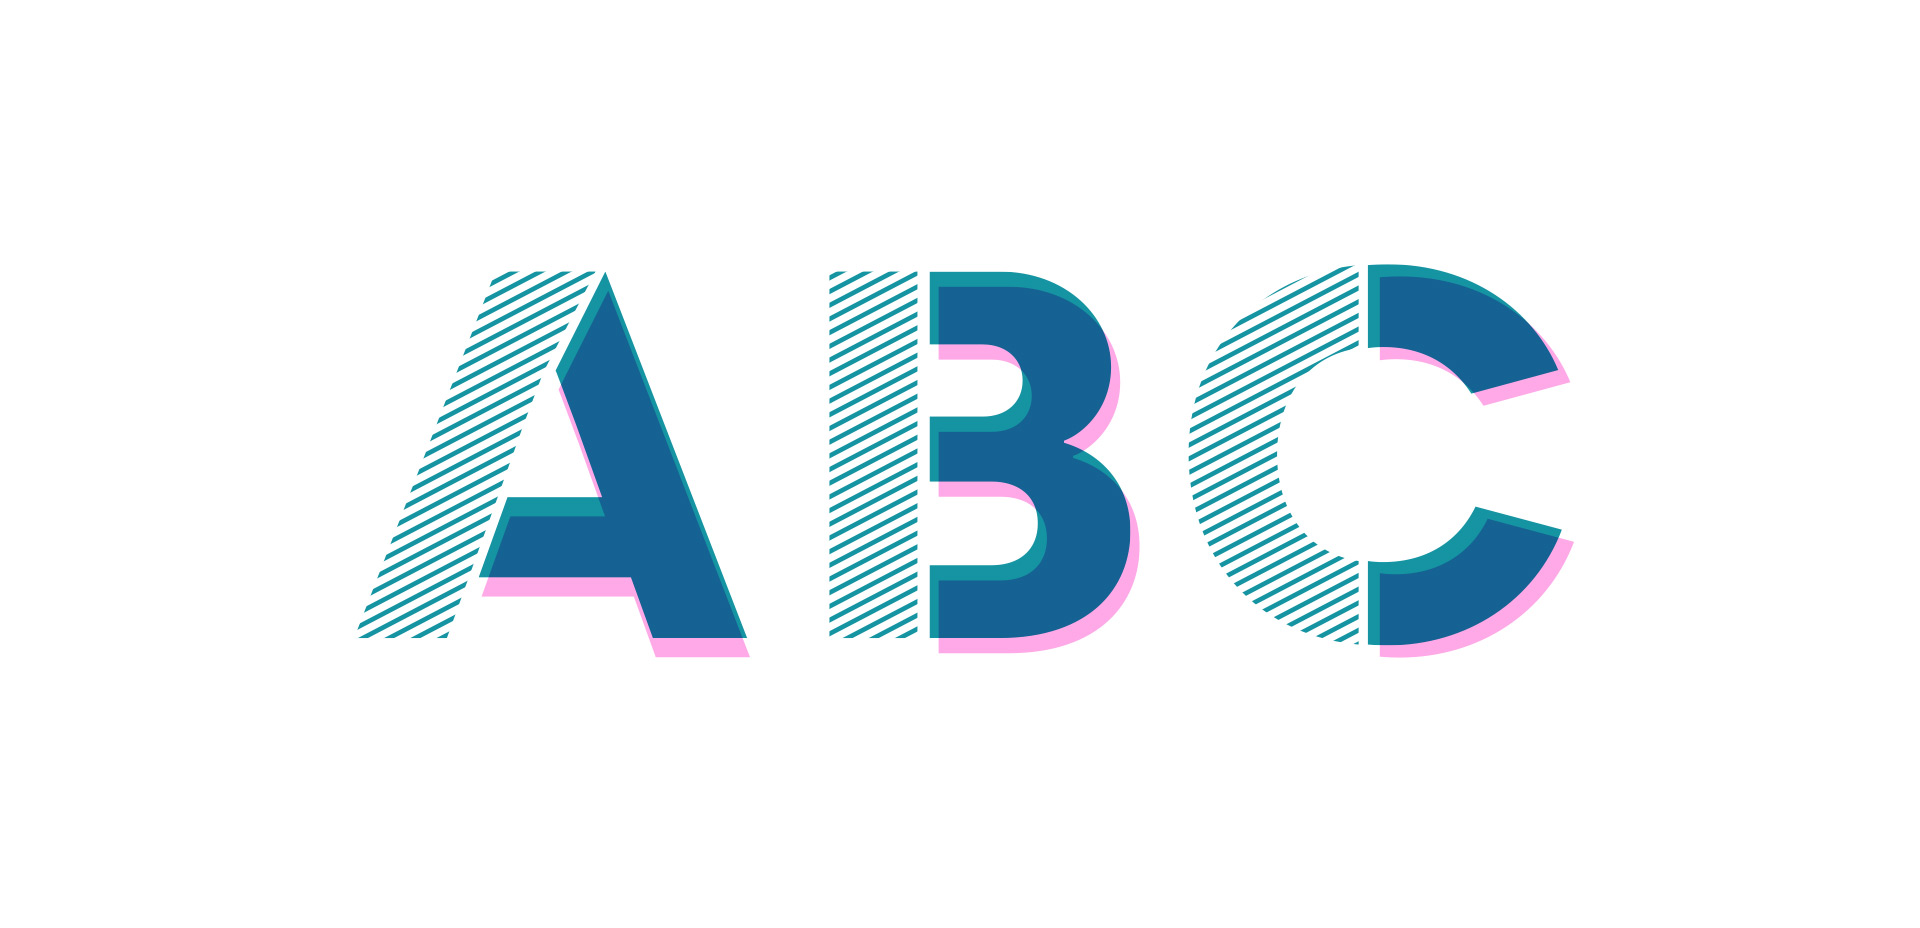 adobe illustrator font download